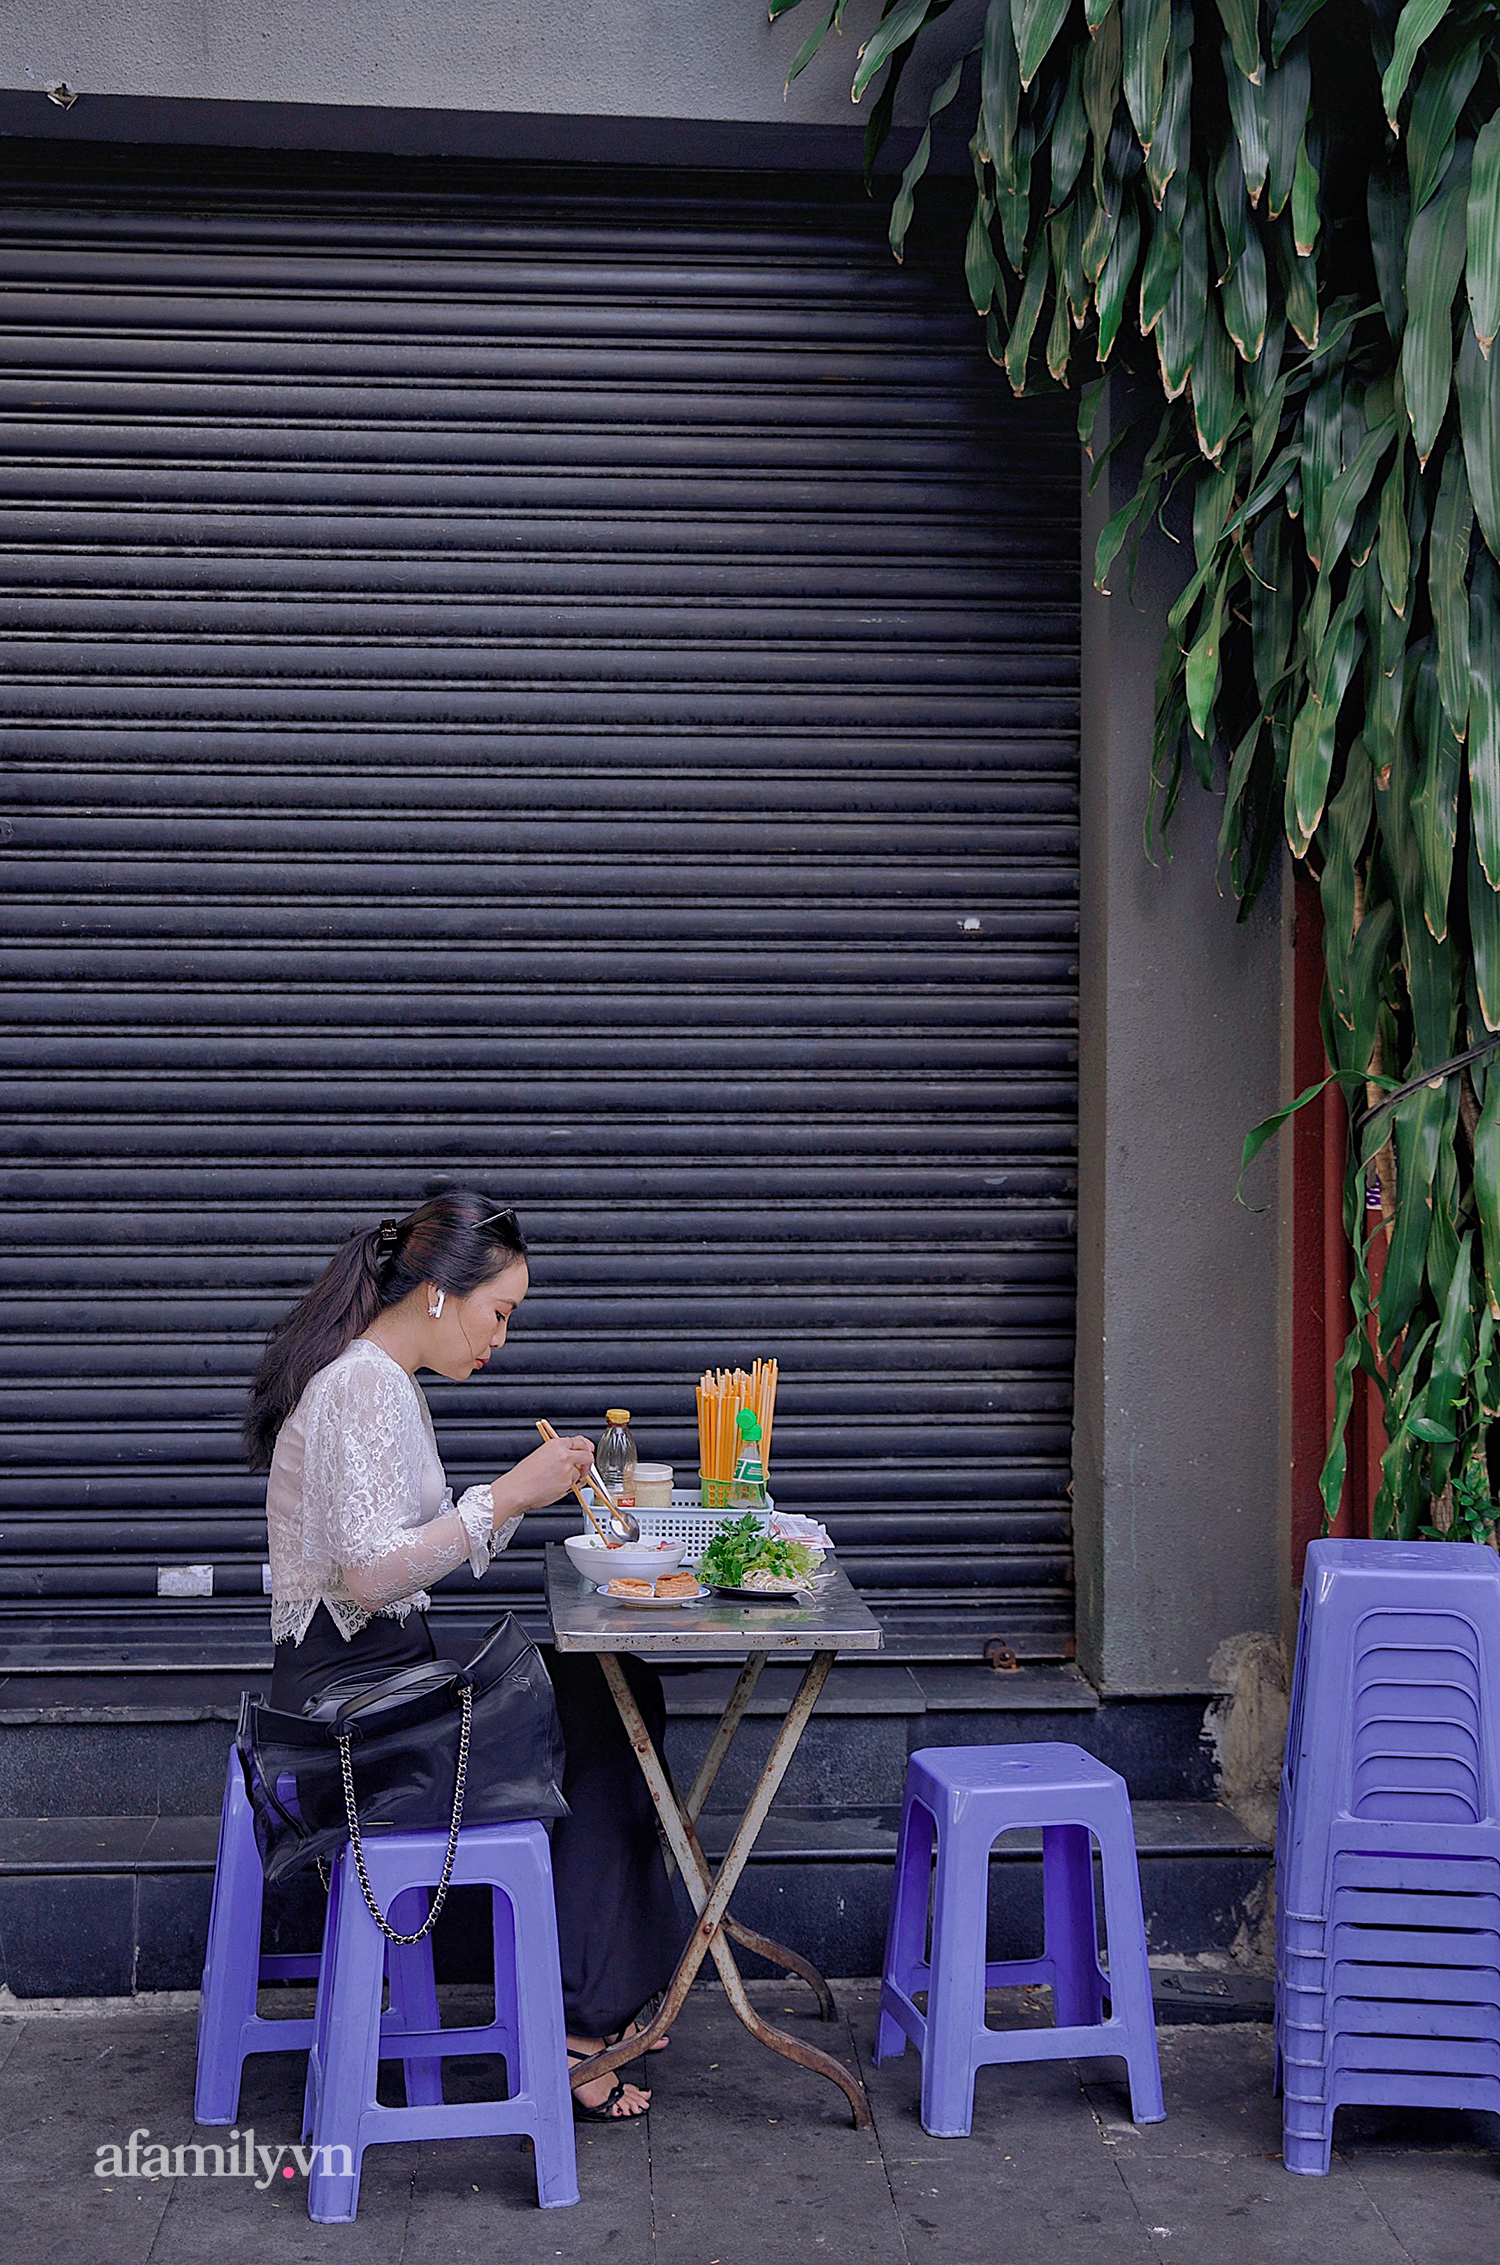 Tiệm hủ tiếu hơn 70 năm nổi tiếng với nồi sốt cà chua hầm cả Sài Gòn không đâu có, sở hữu tấm bảng hiệu được 